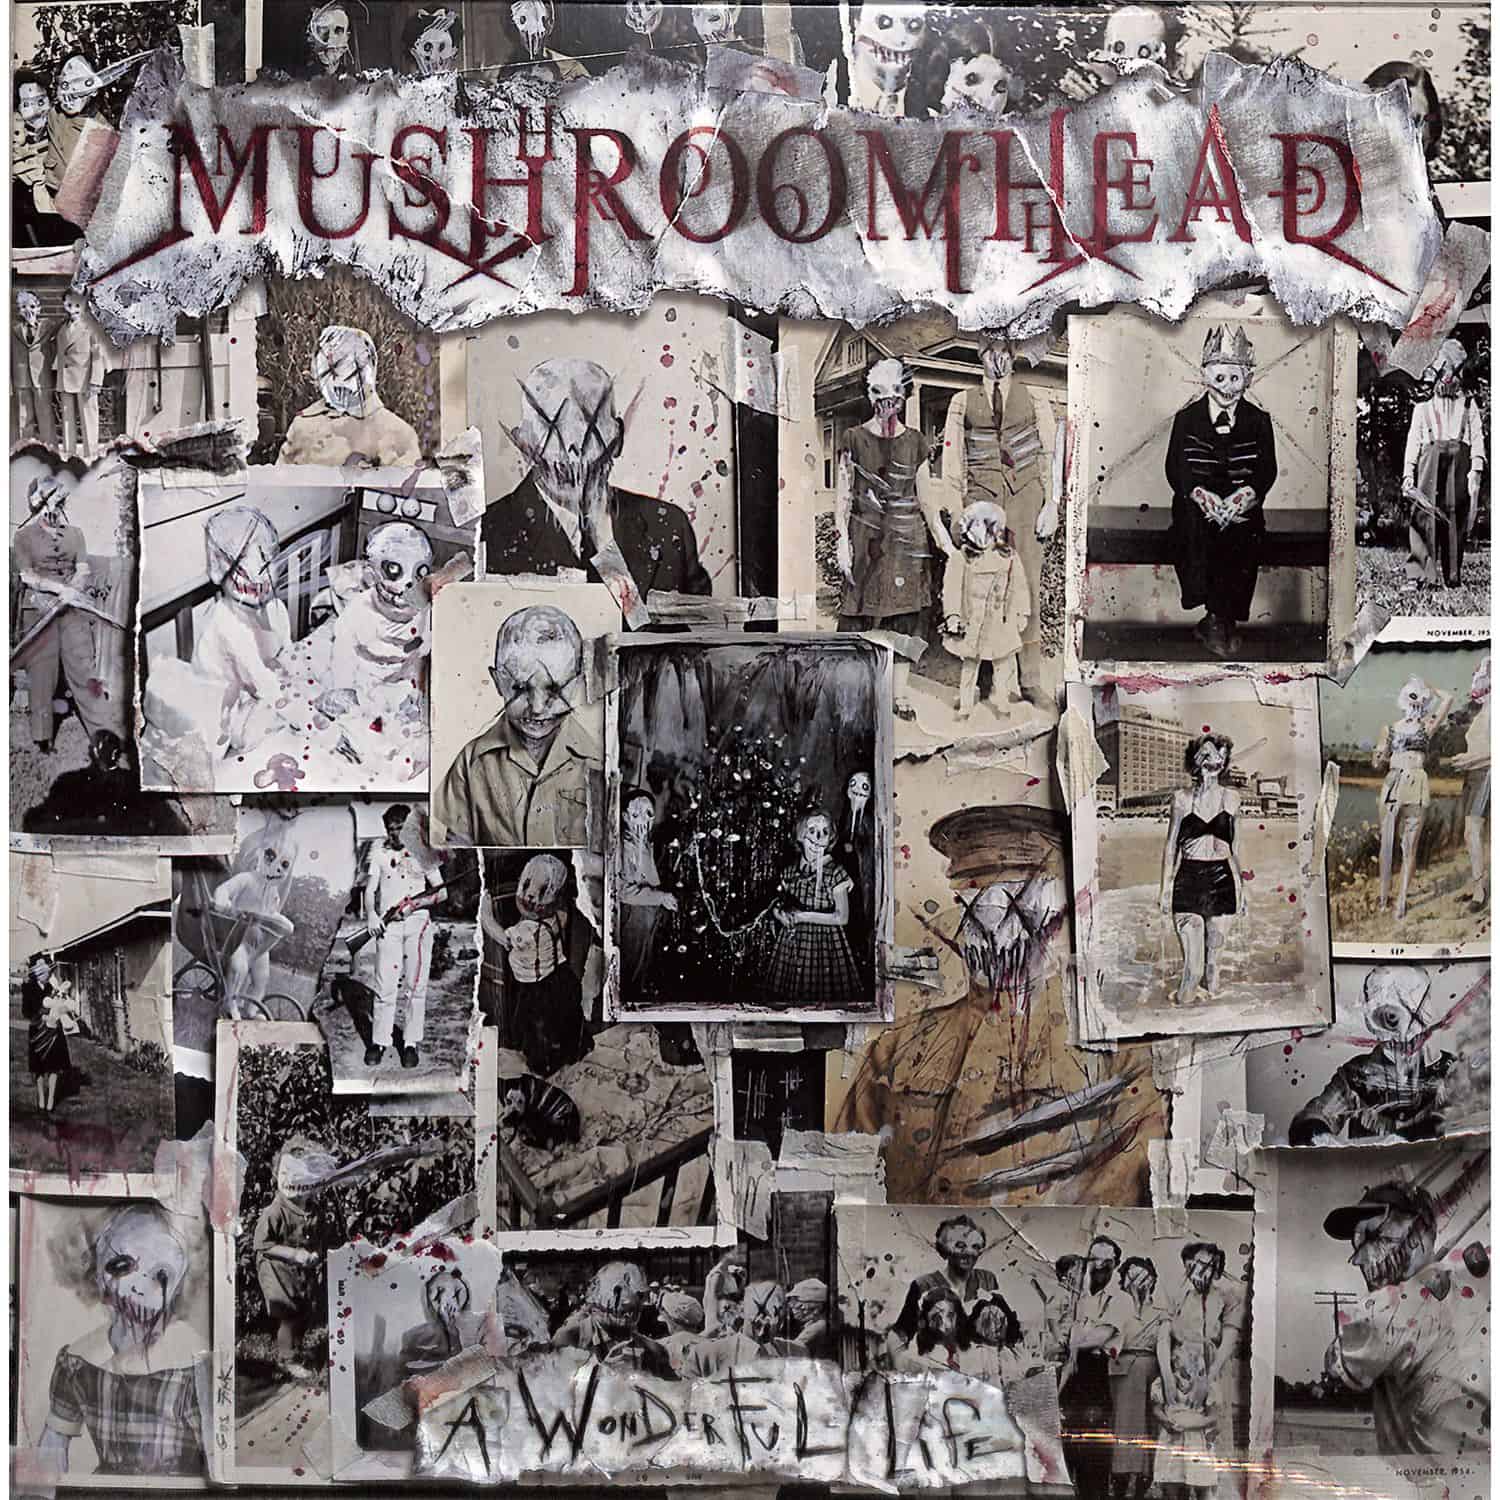 Mushroomhead - A WONDERFUL LIFE 